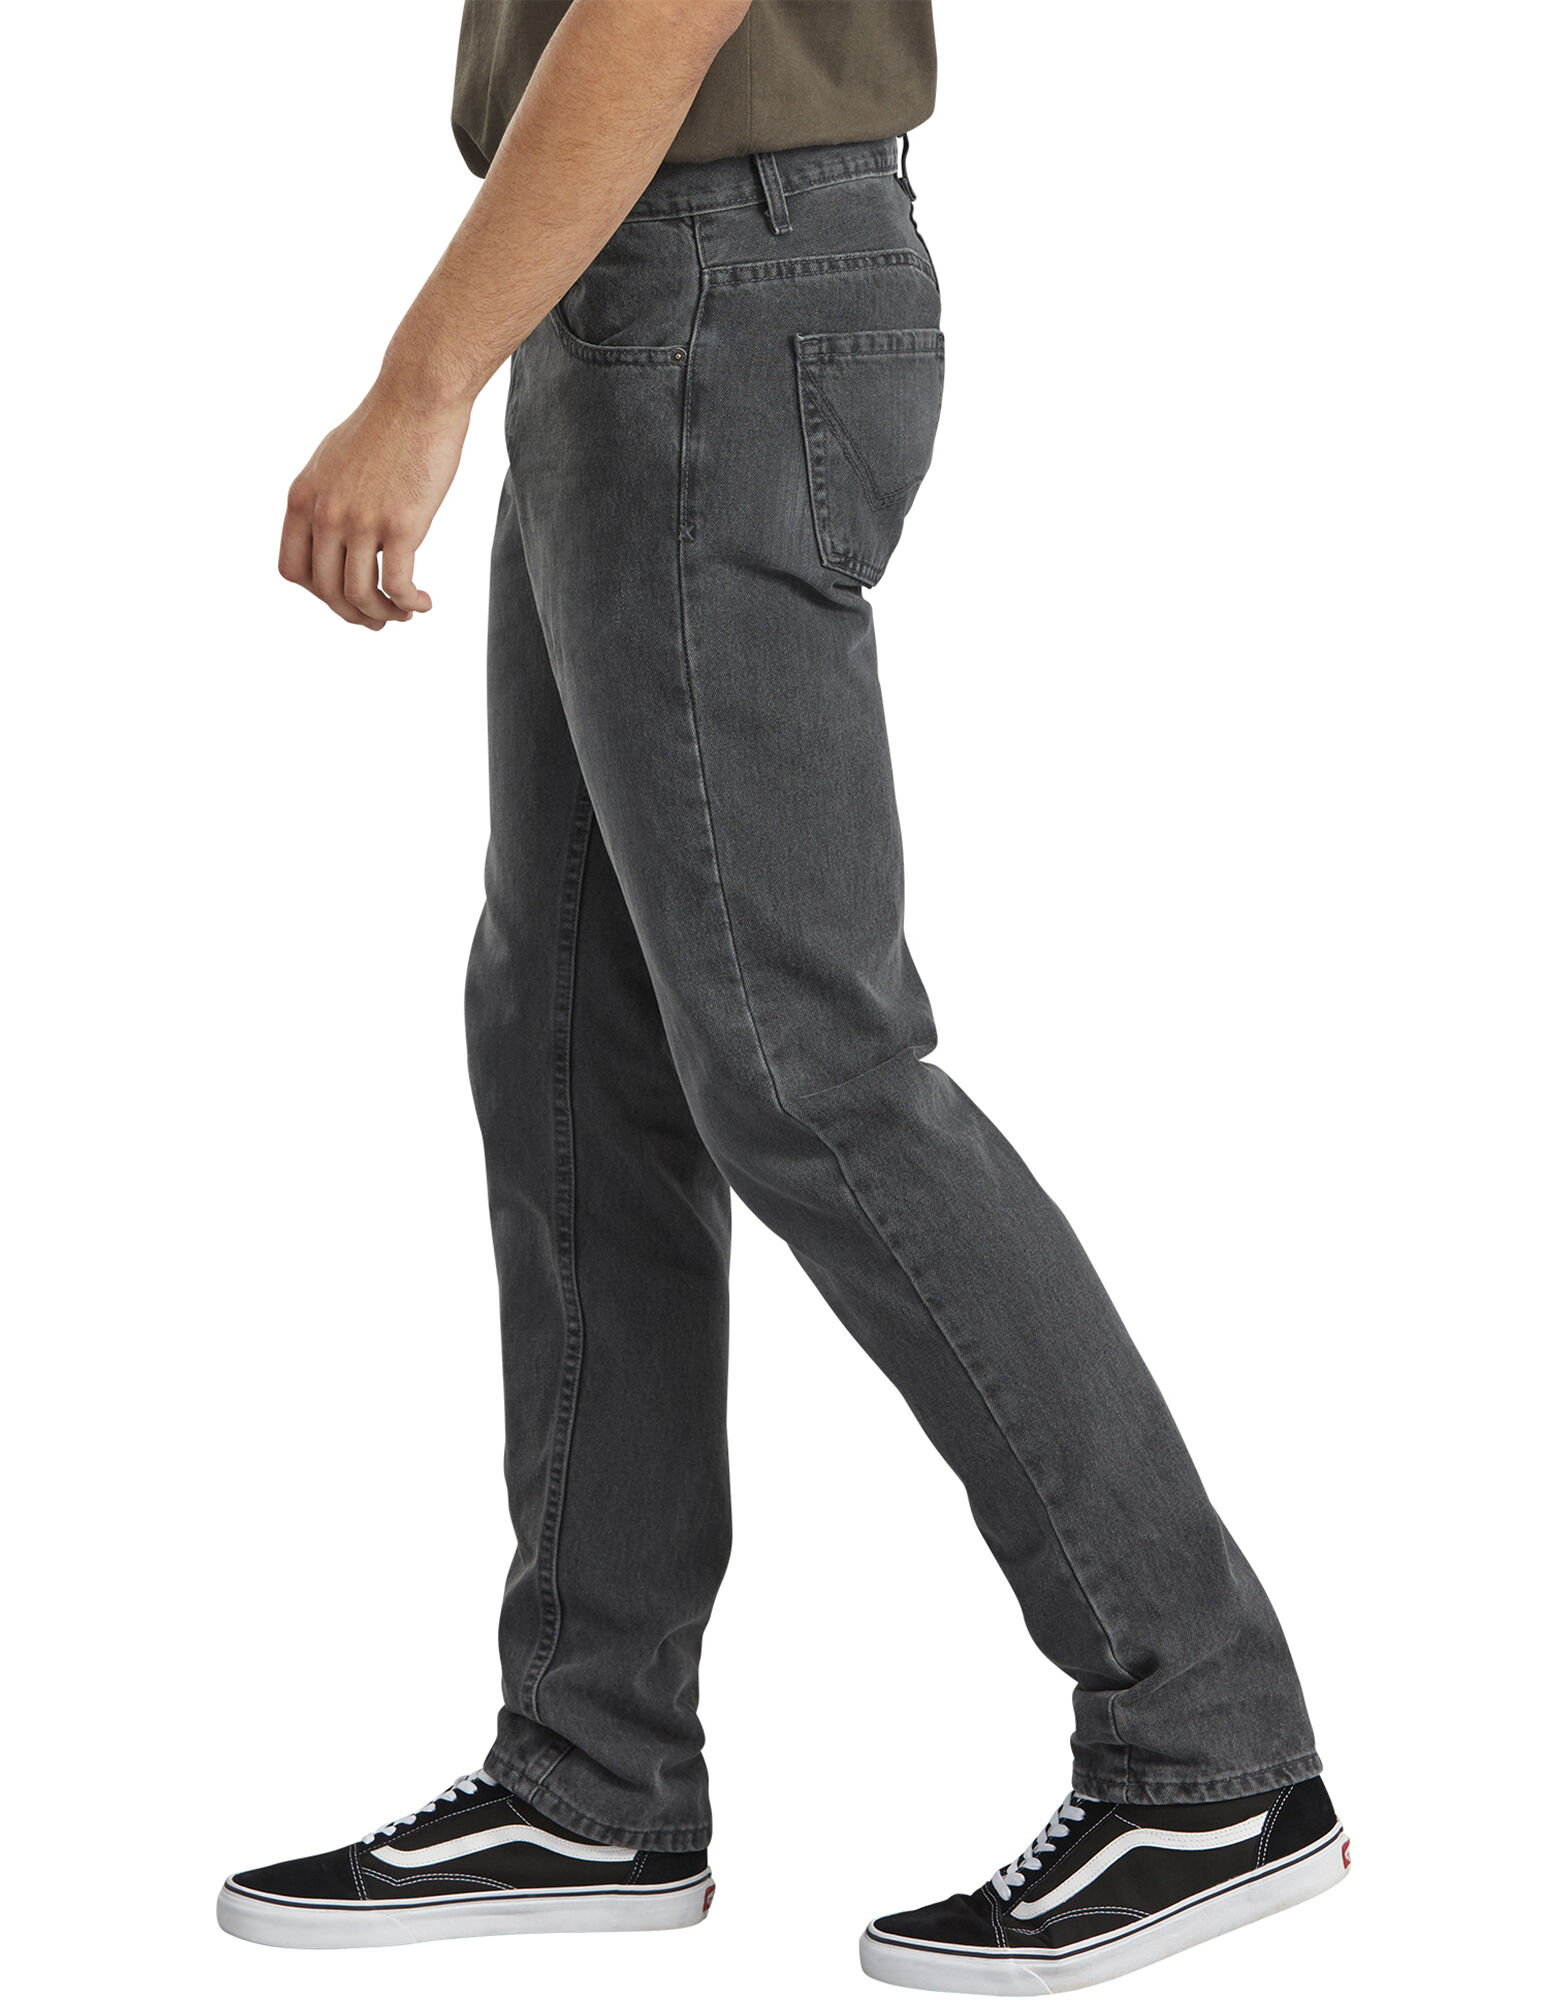 dickies x series slim fit jeans